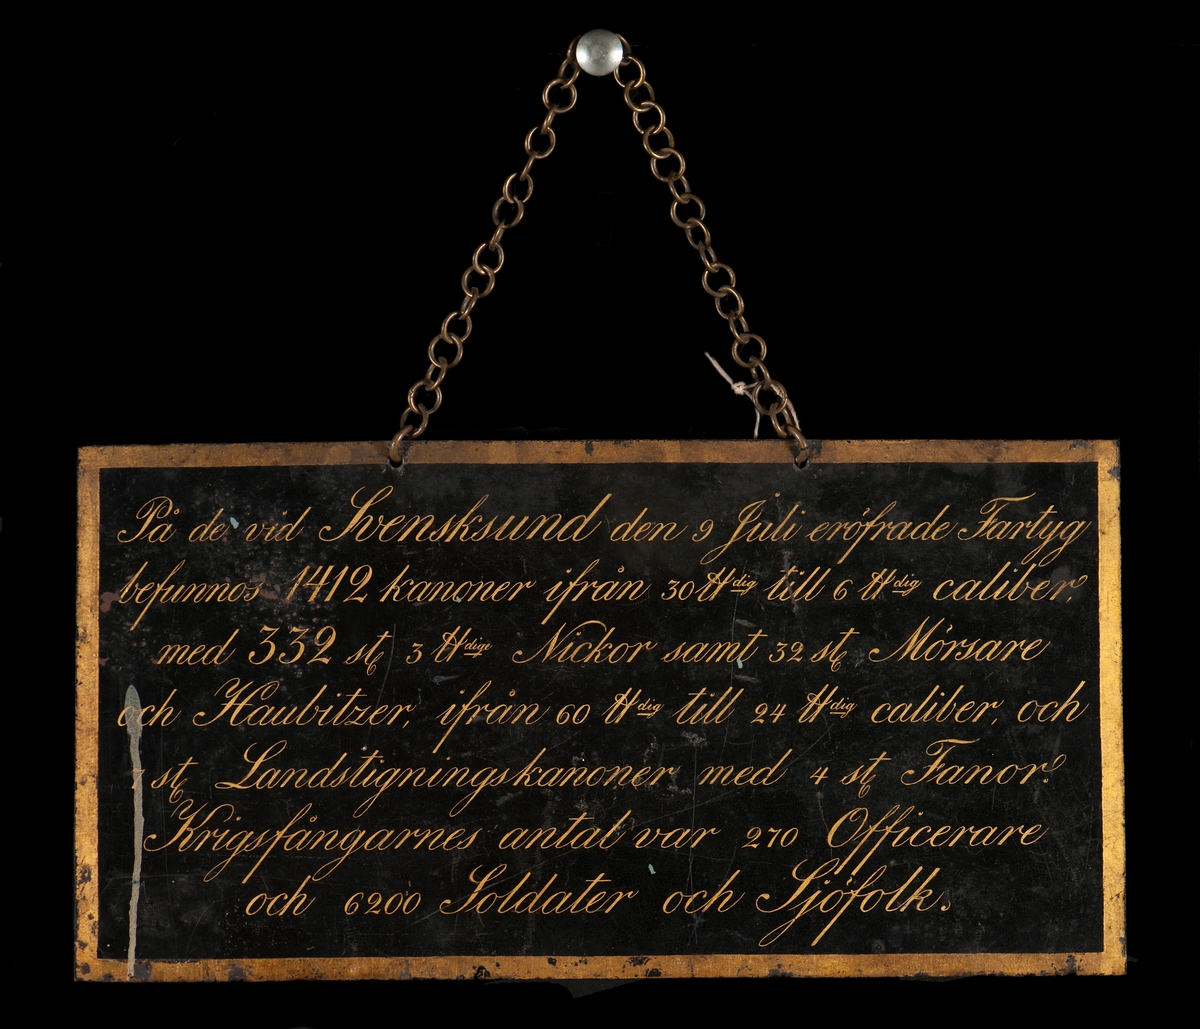 Uppgift å tagna fartyg, kanoner m.m. d. 9 Juli 1790 vid Svensksund. Kedja för upphängning.